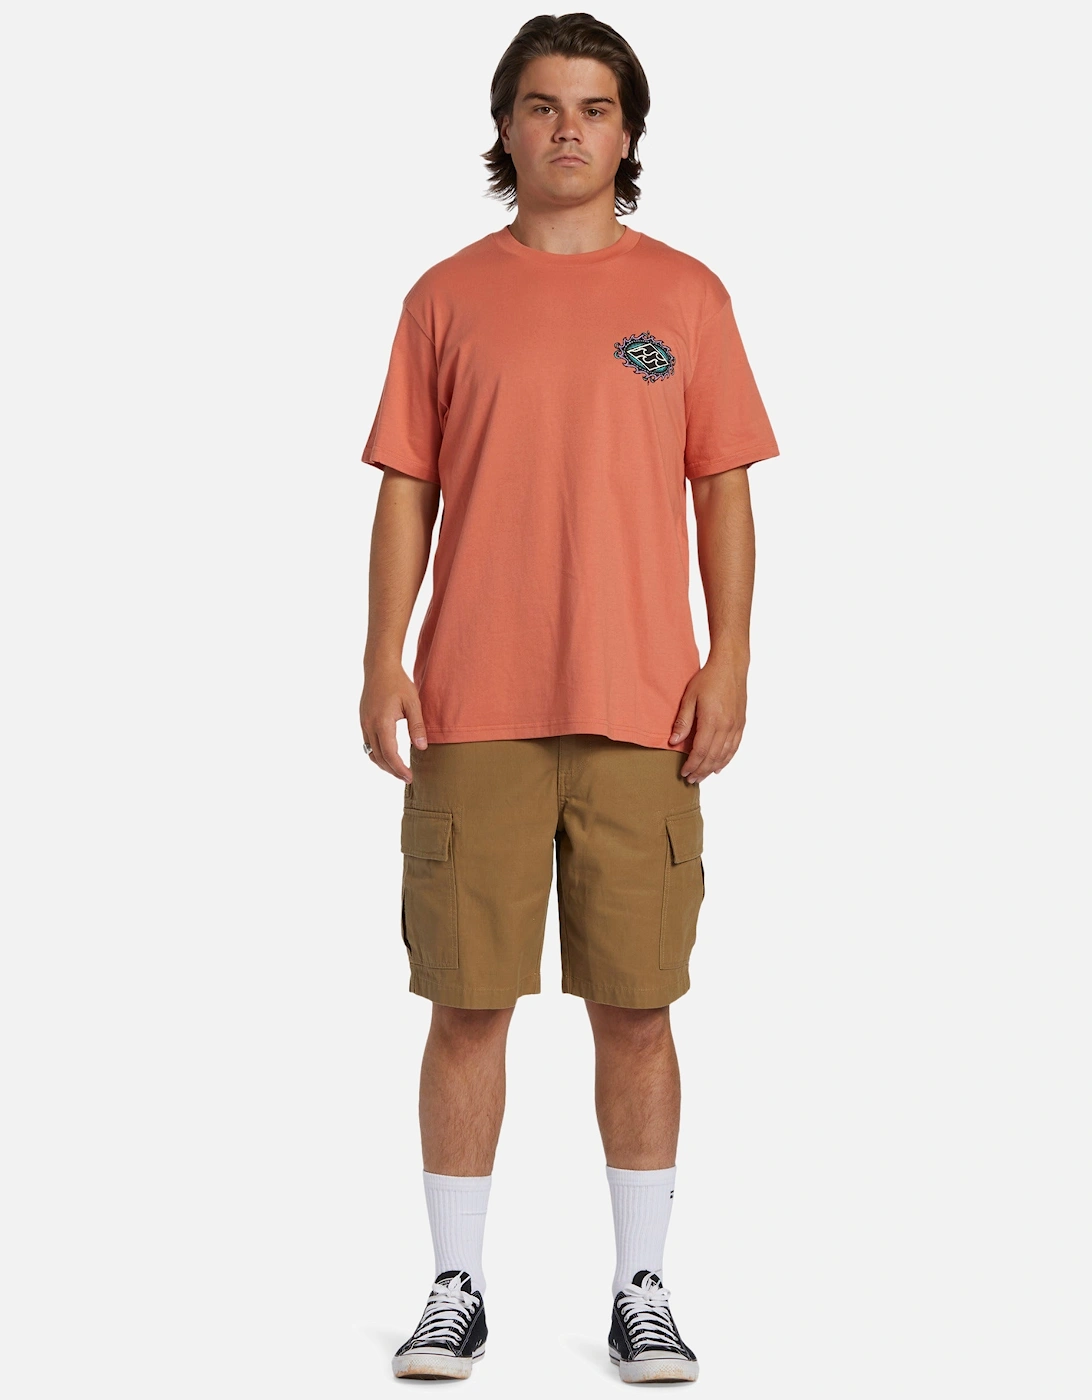 Mens Crayon Wave Short Sleeve T-Shirt